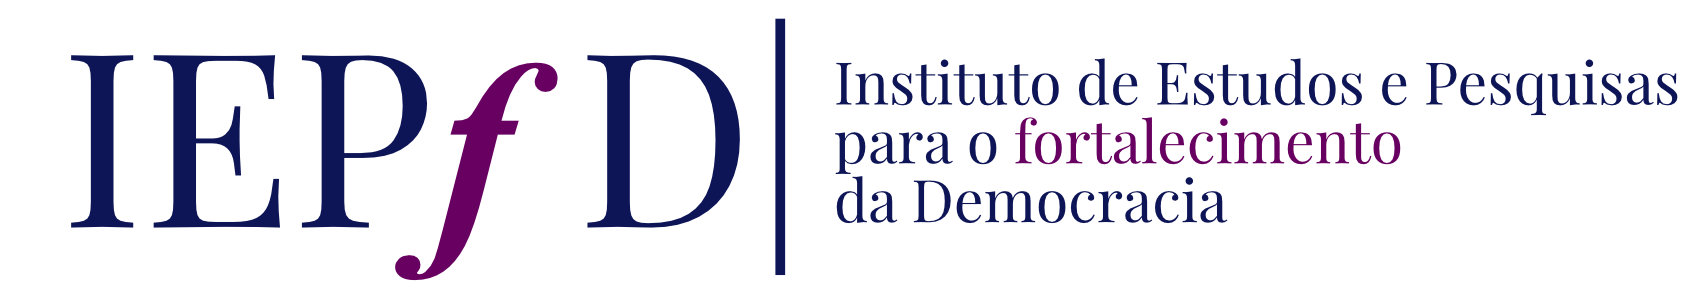 IEPfD | Instituto de Estudos e Pesquisas para o fortalecimento da Democracia